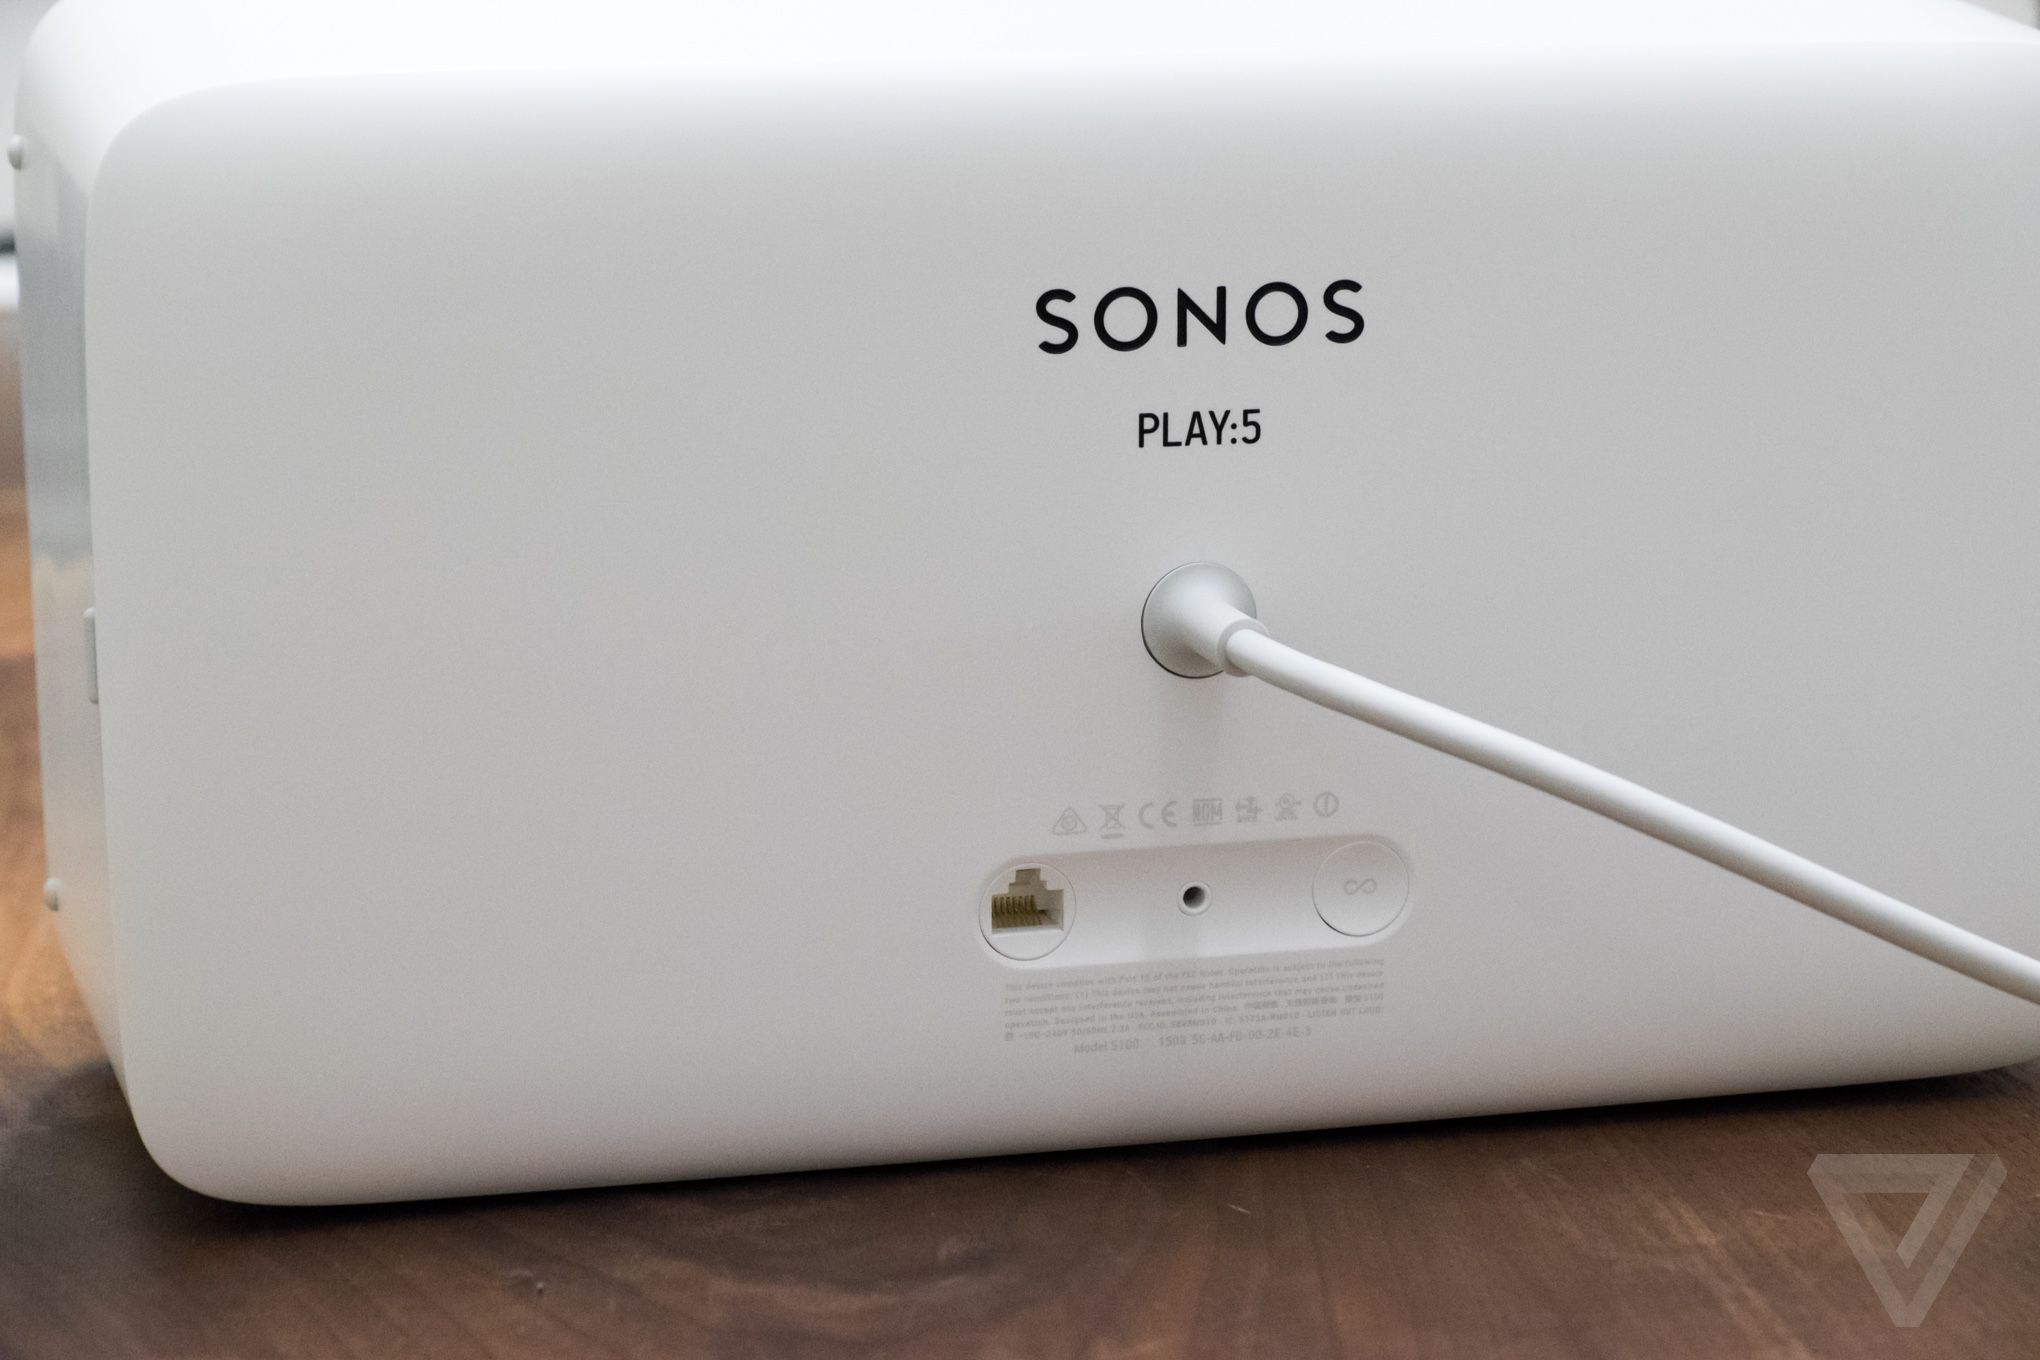 Sonos back